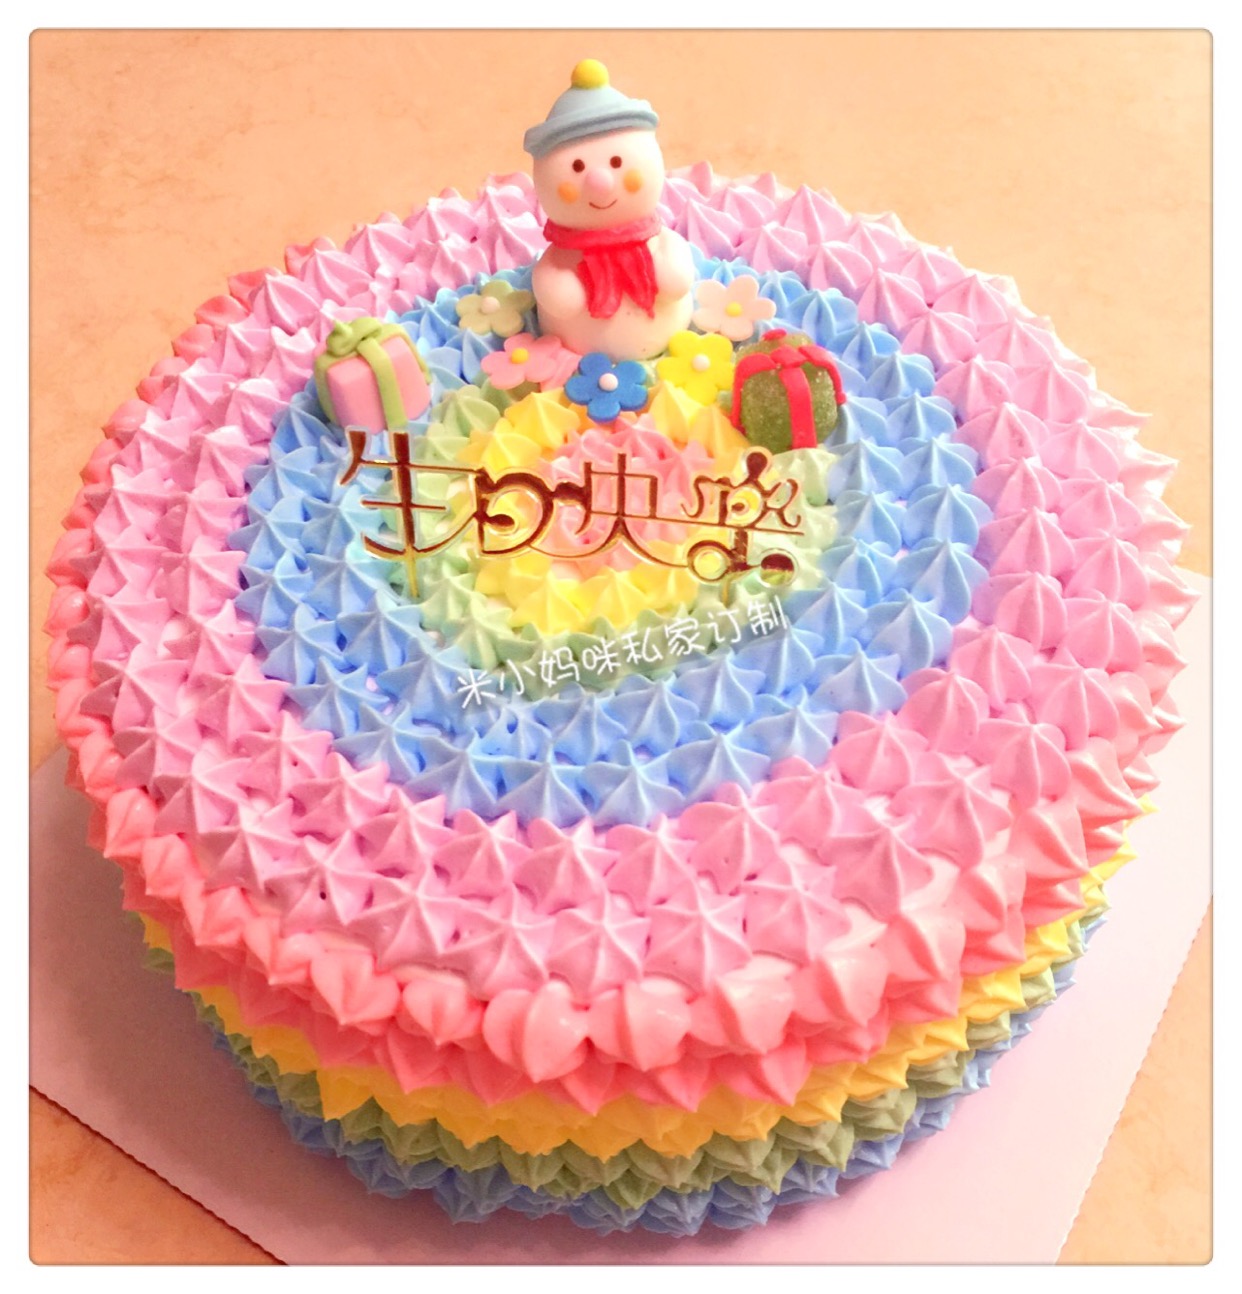 彩虹蛋糕的做法_【图解】彩虹蛋糕怎么做如何做好吃_彩虹蛋糕家常做法大全_BUBI酱_豆果美食